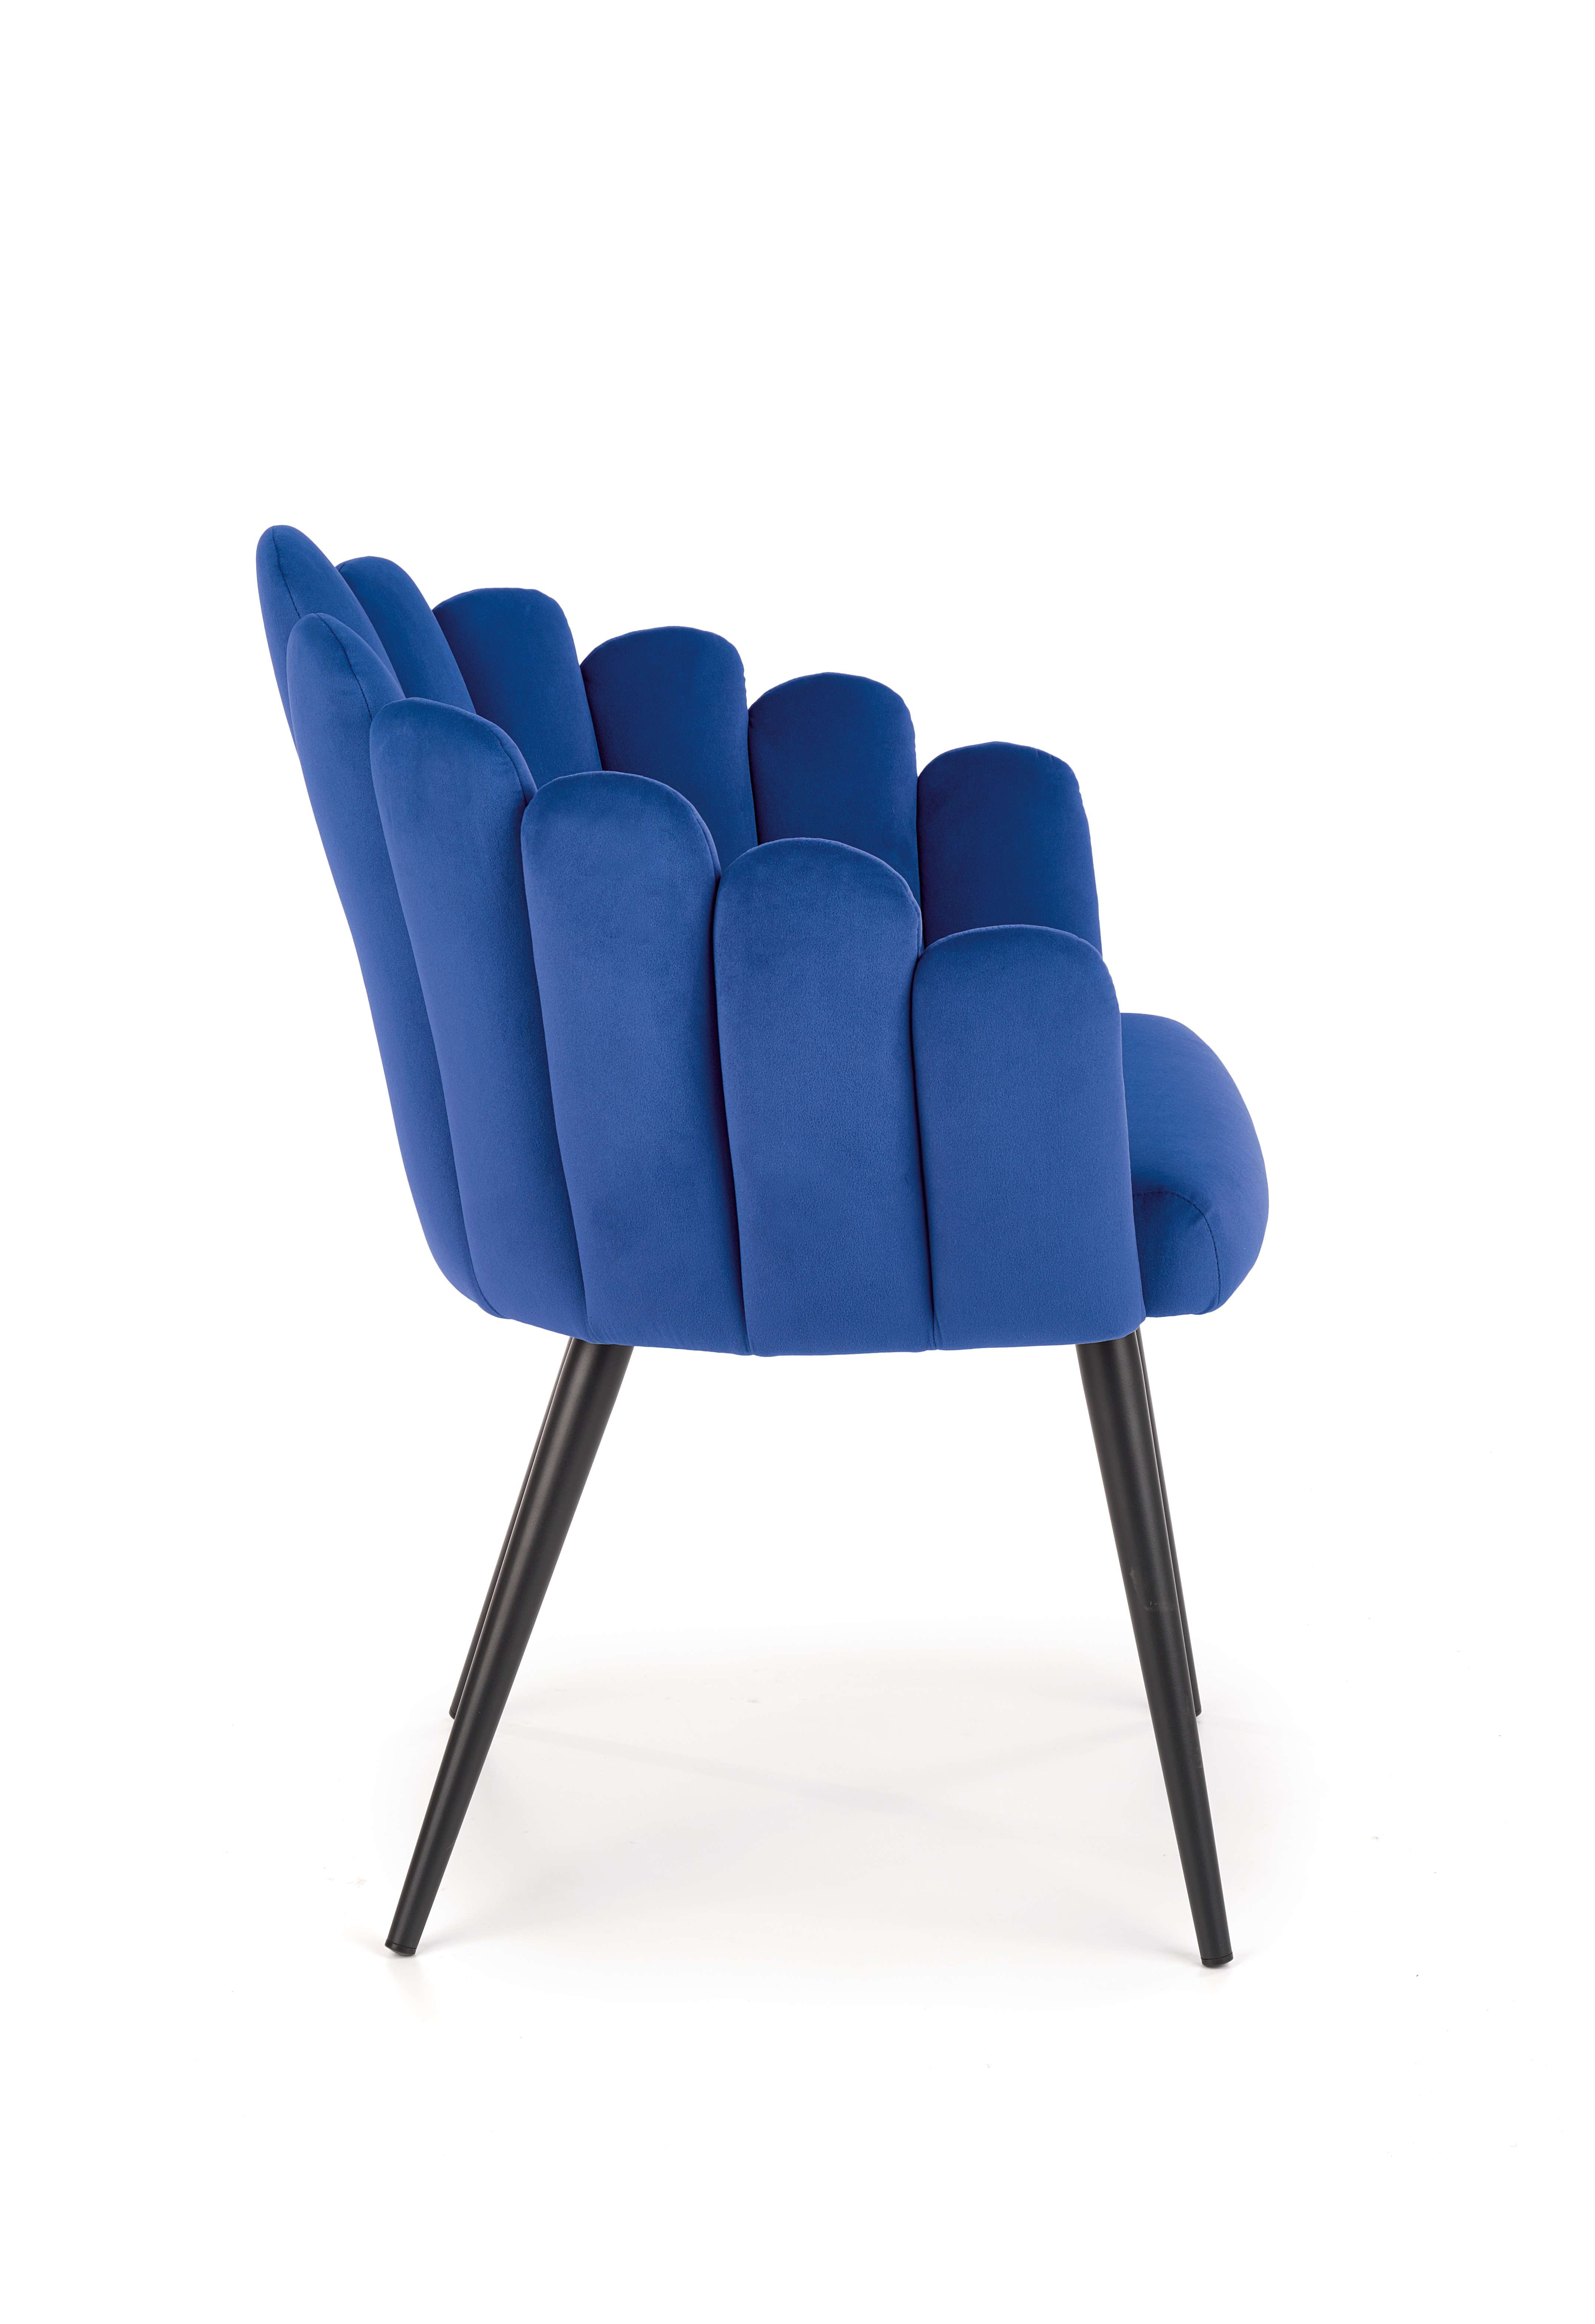 K410 Židle tmavě modrá velvet Židle k410 - granátový velvet